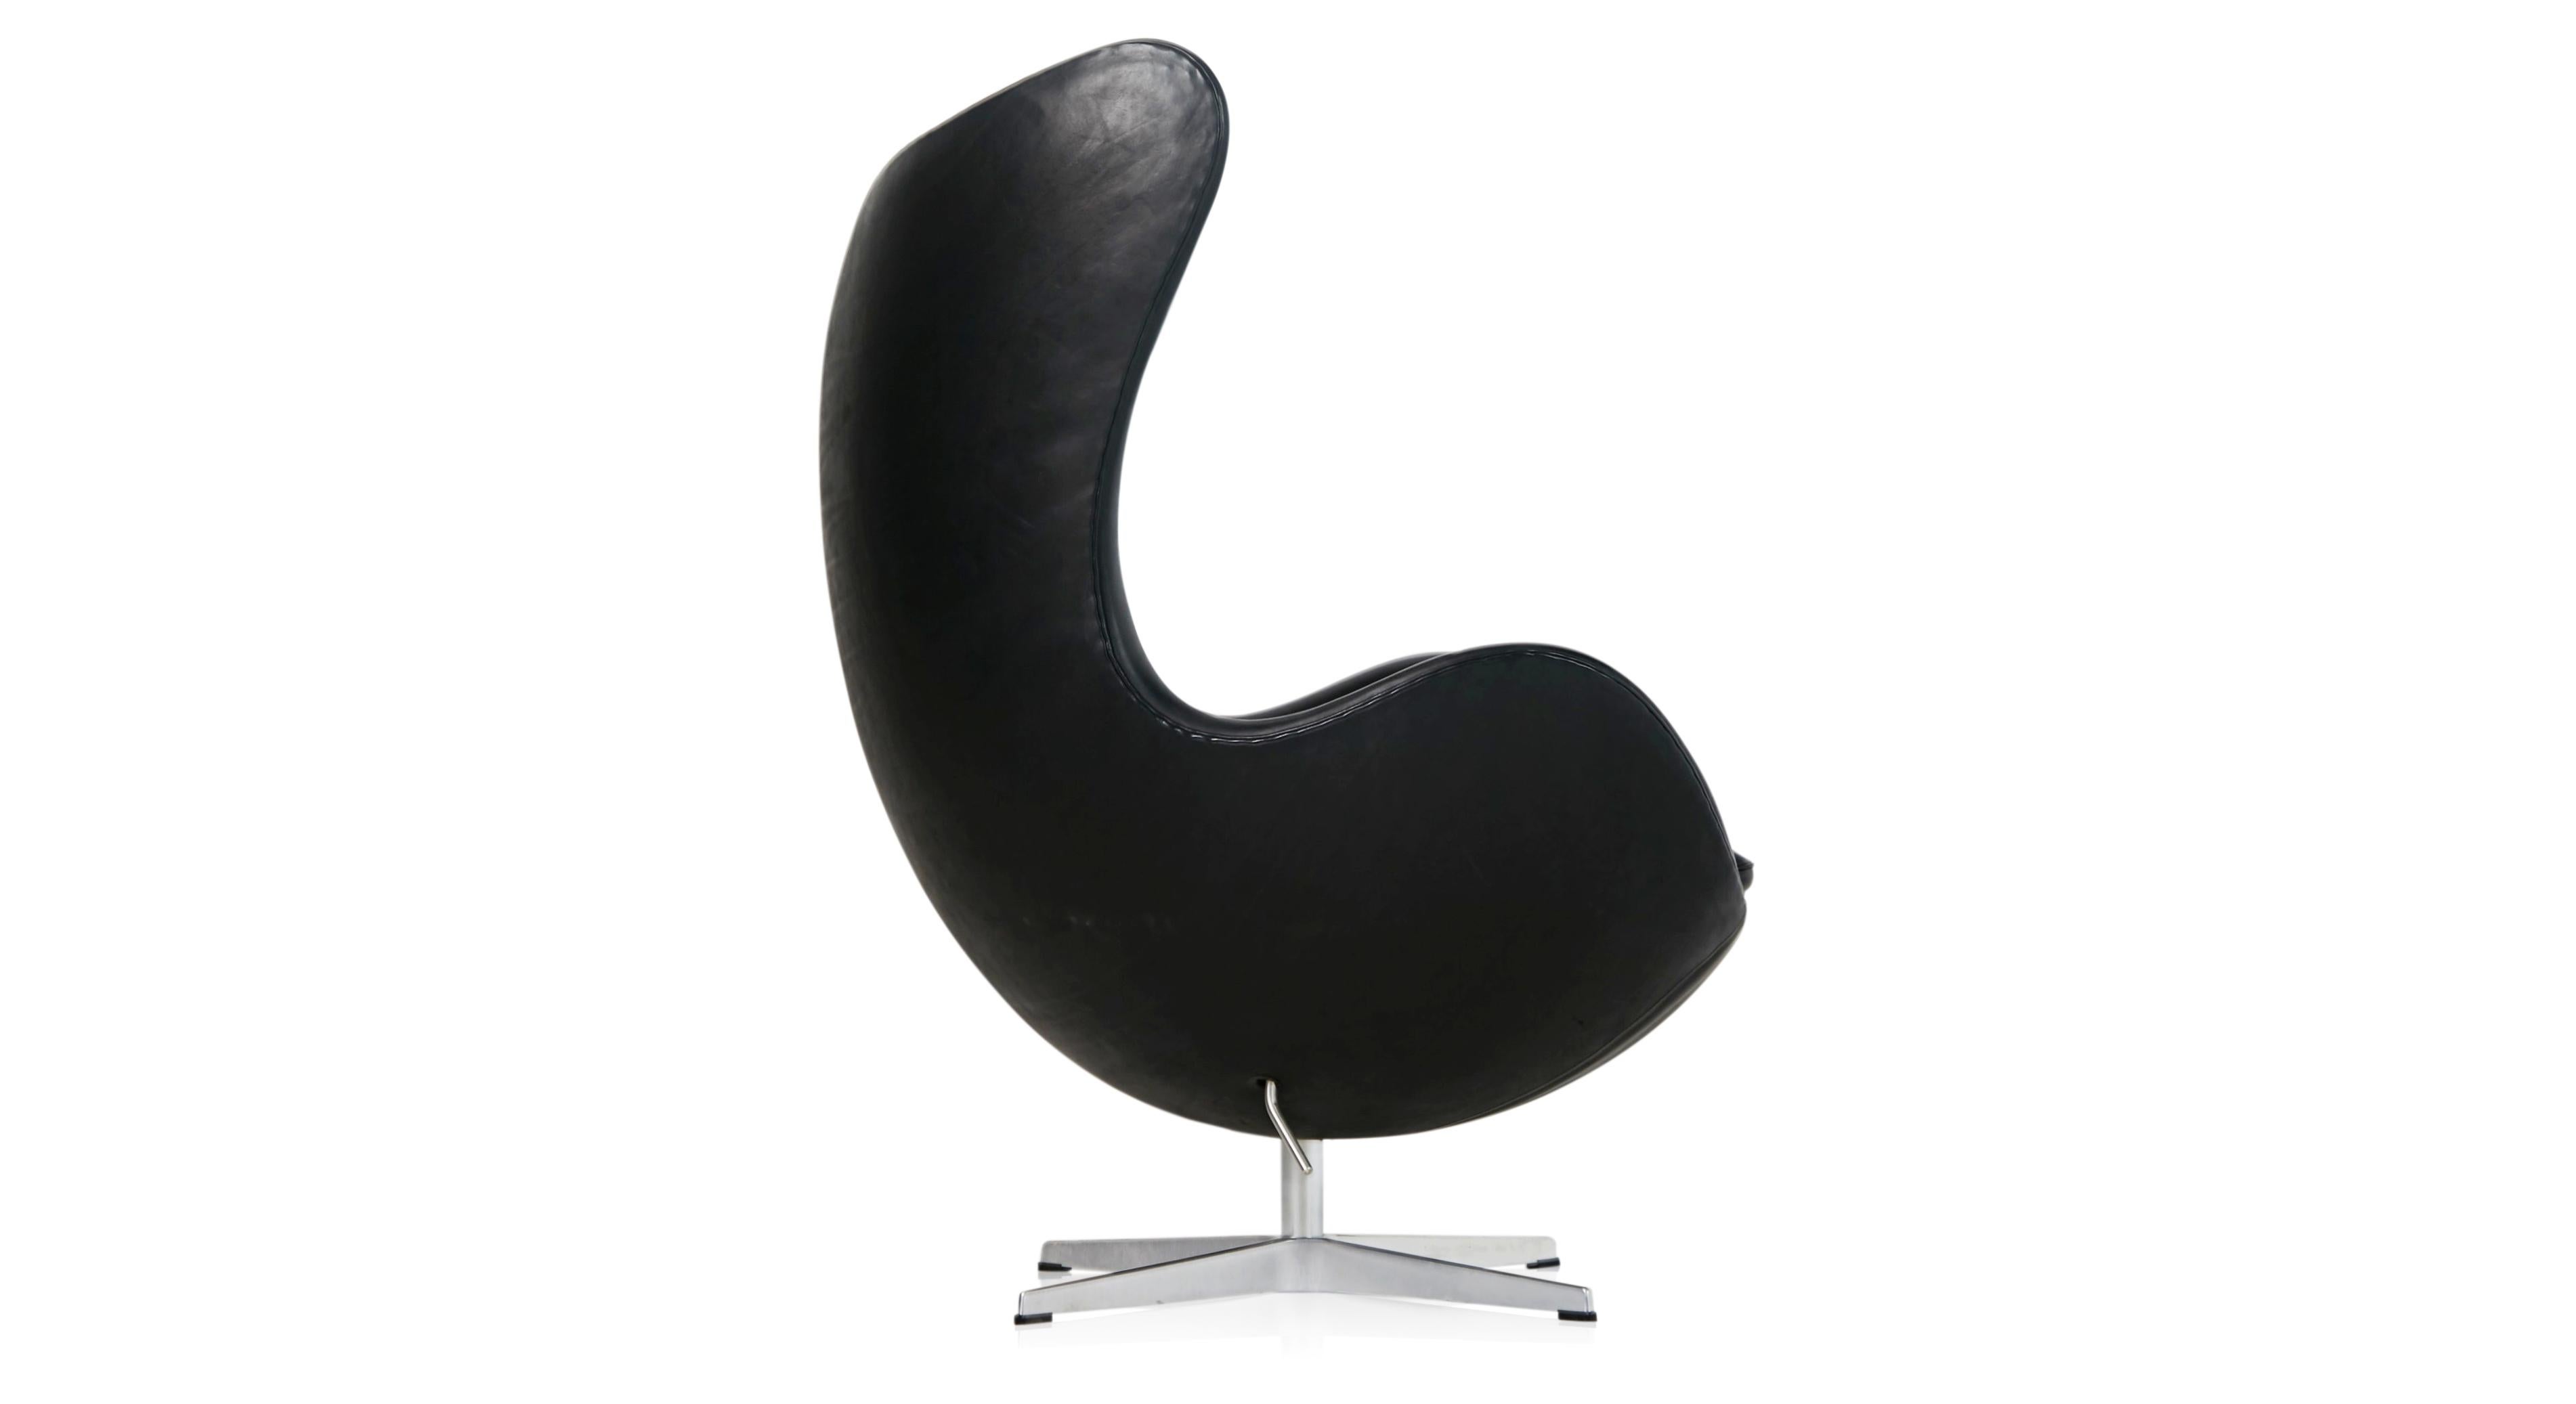 Egg Chair by Arne Jacobson for Fritz Hansen in Black Elegance Leather with Tilt (amerikanisch)